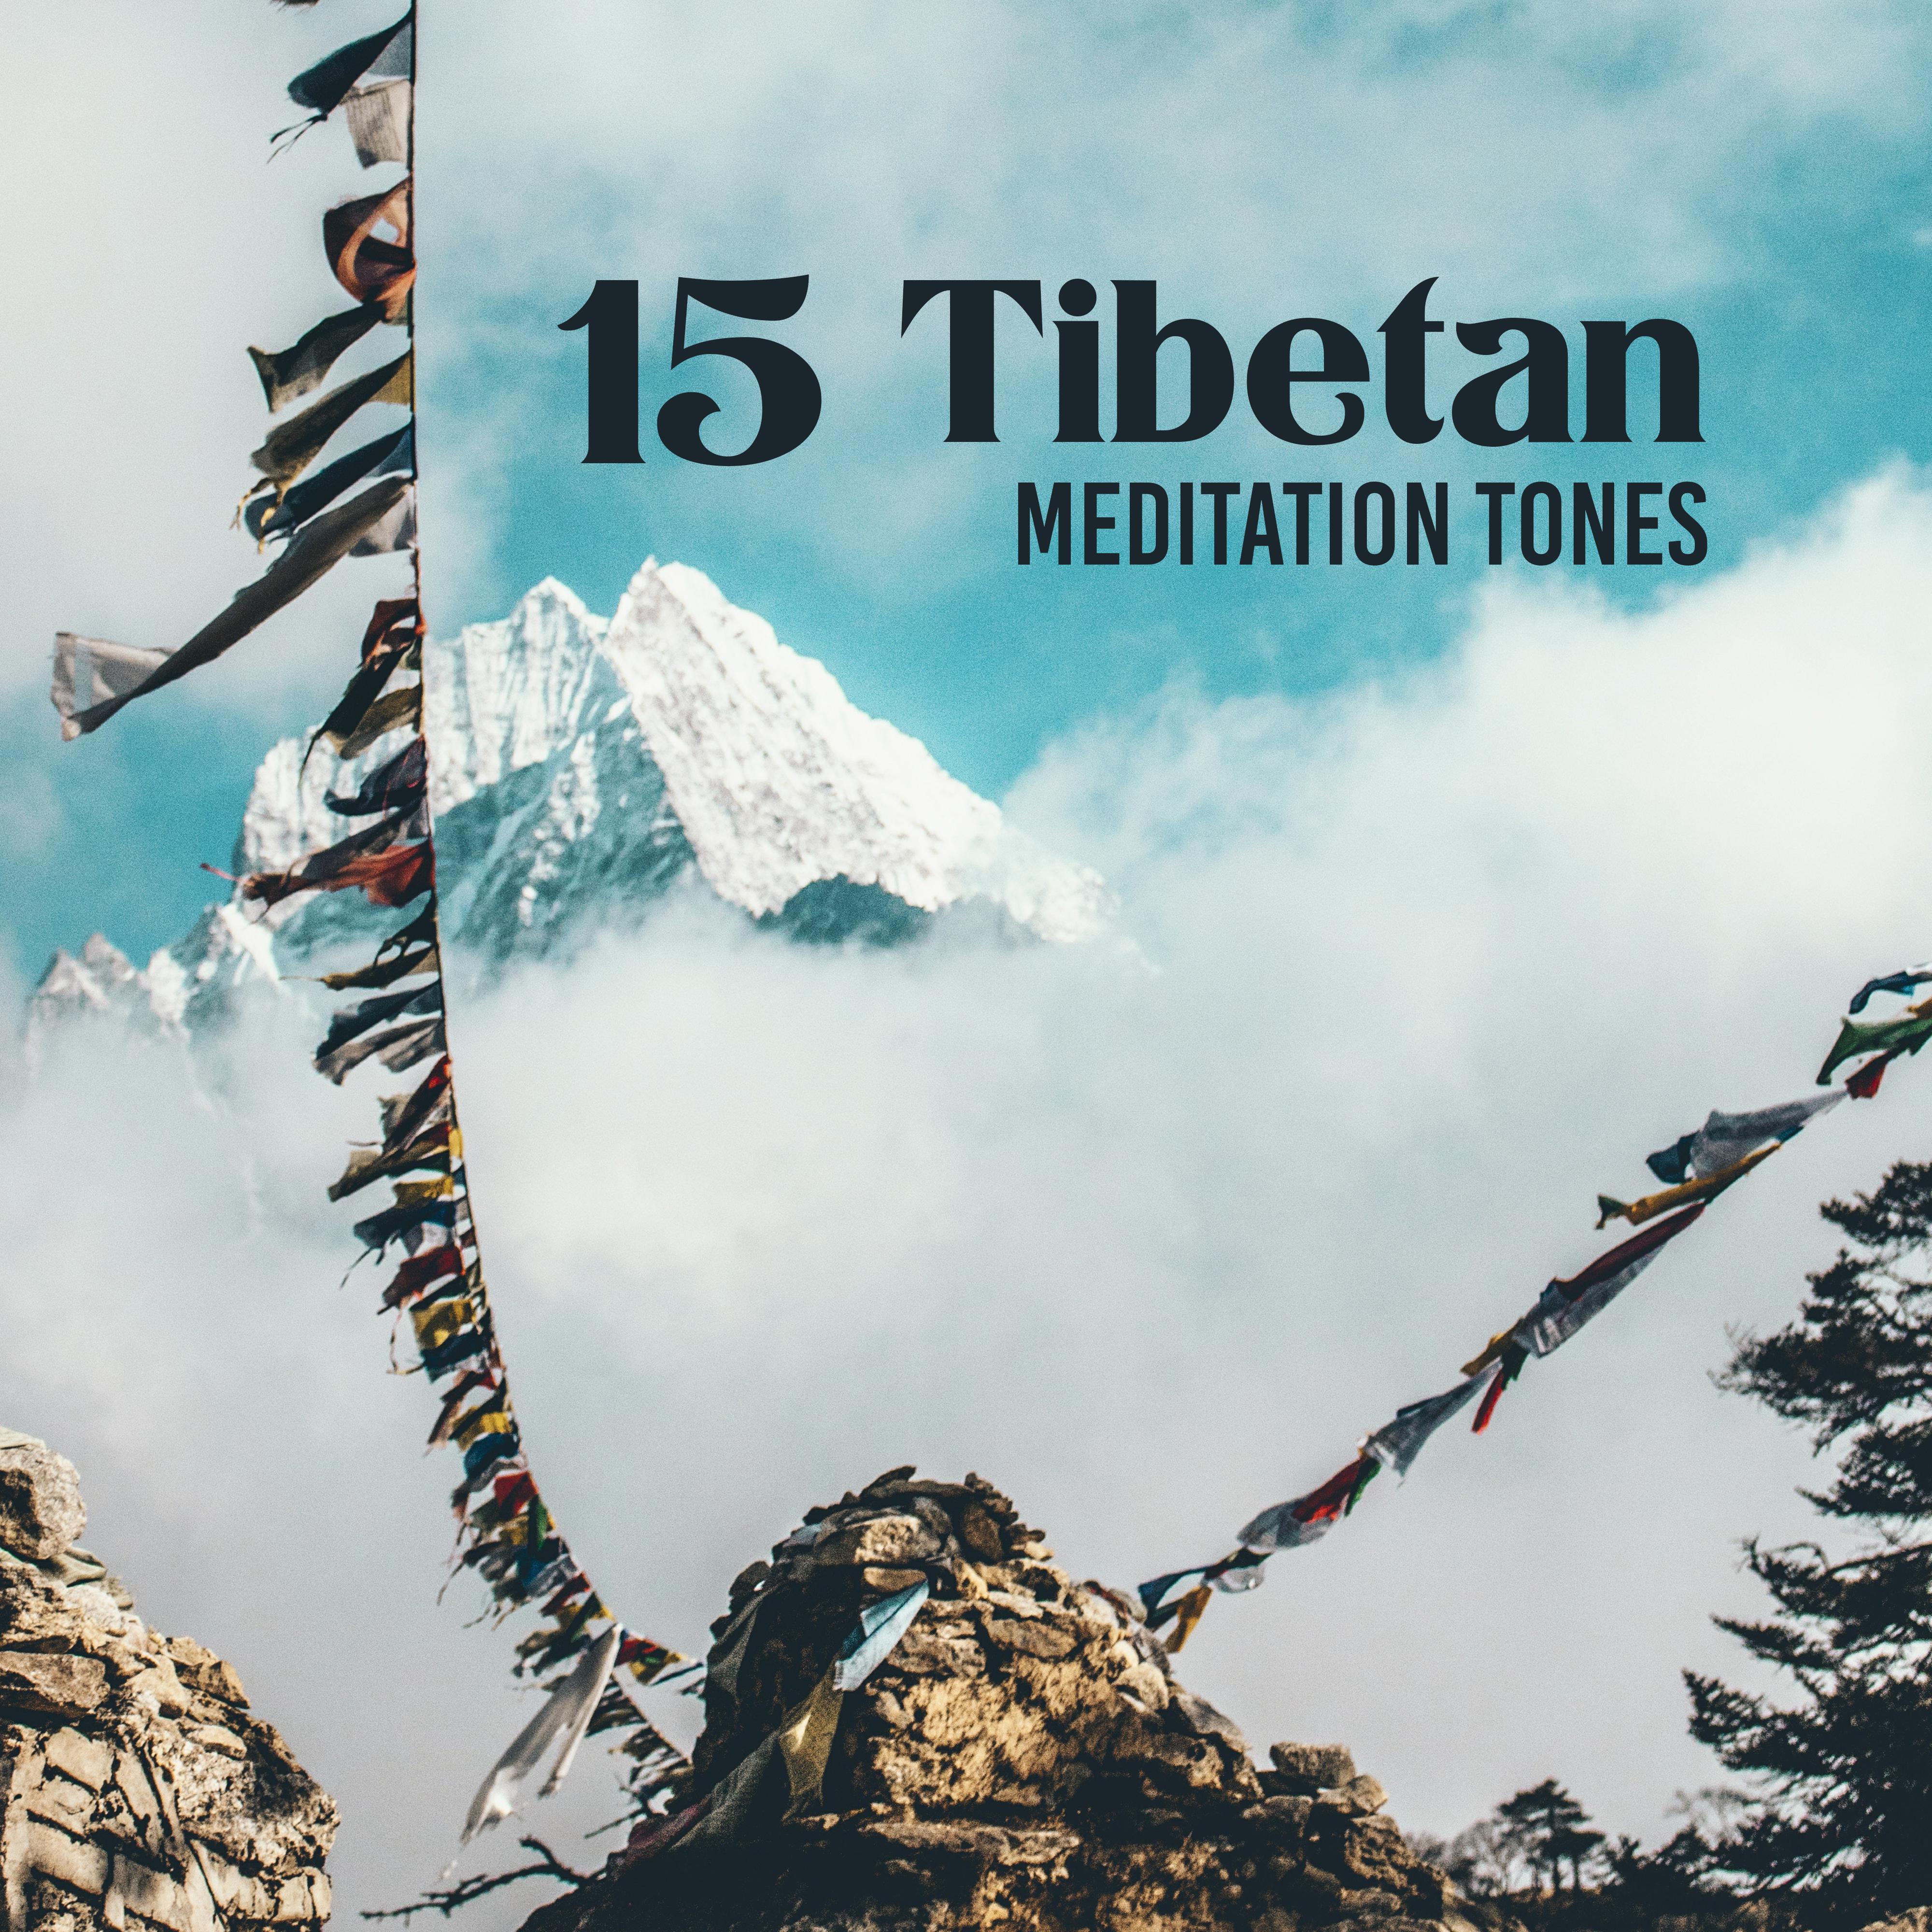 15 Tibetan Meditation Tones